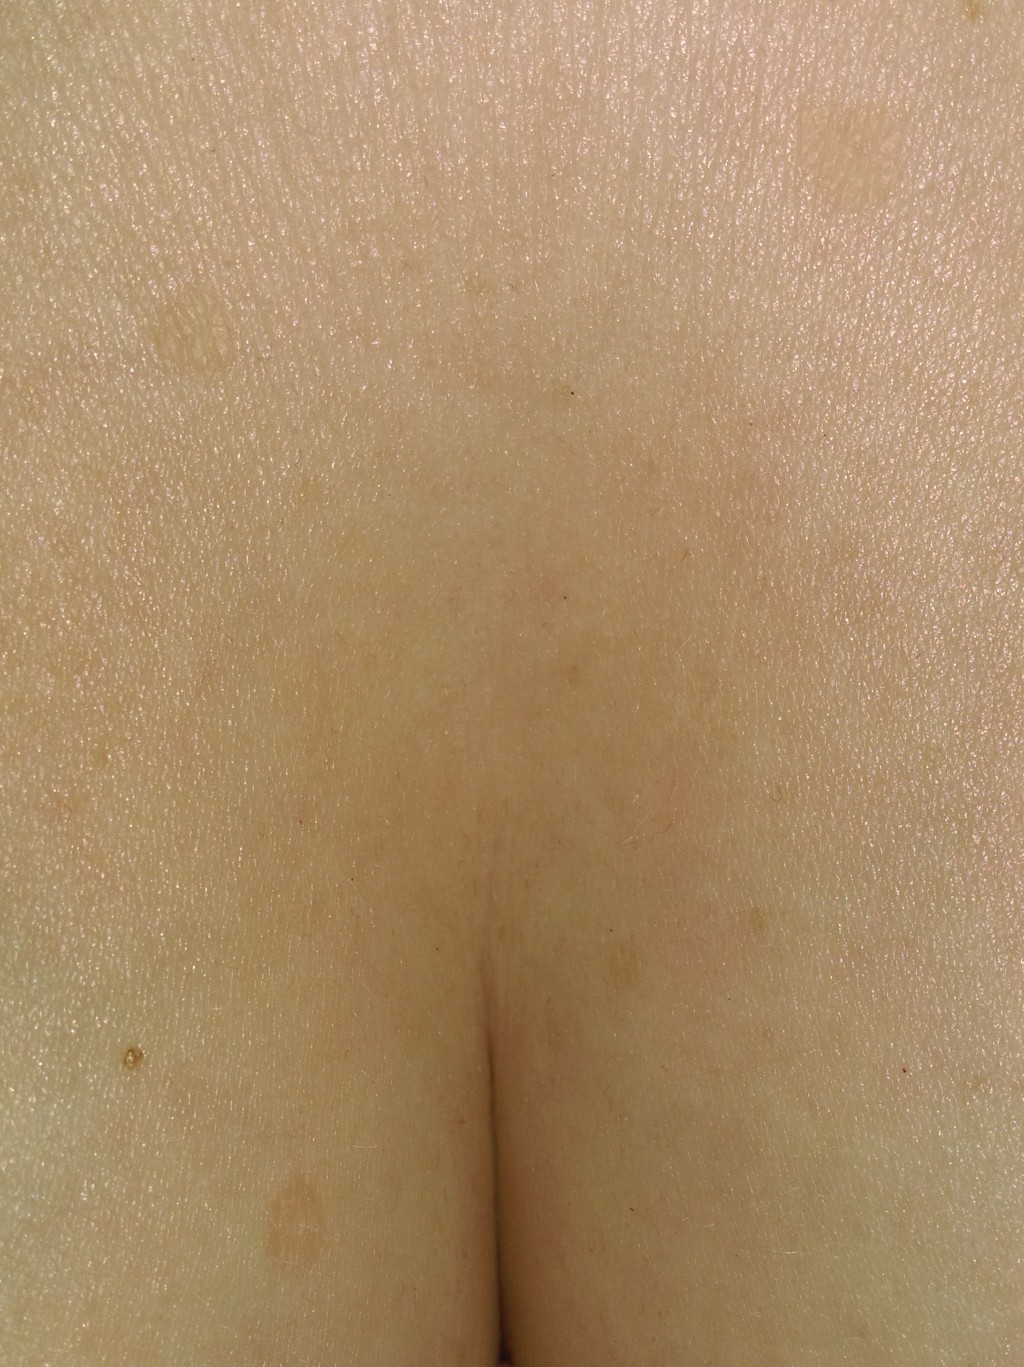 светлые пятна на груди женщин фото 67